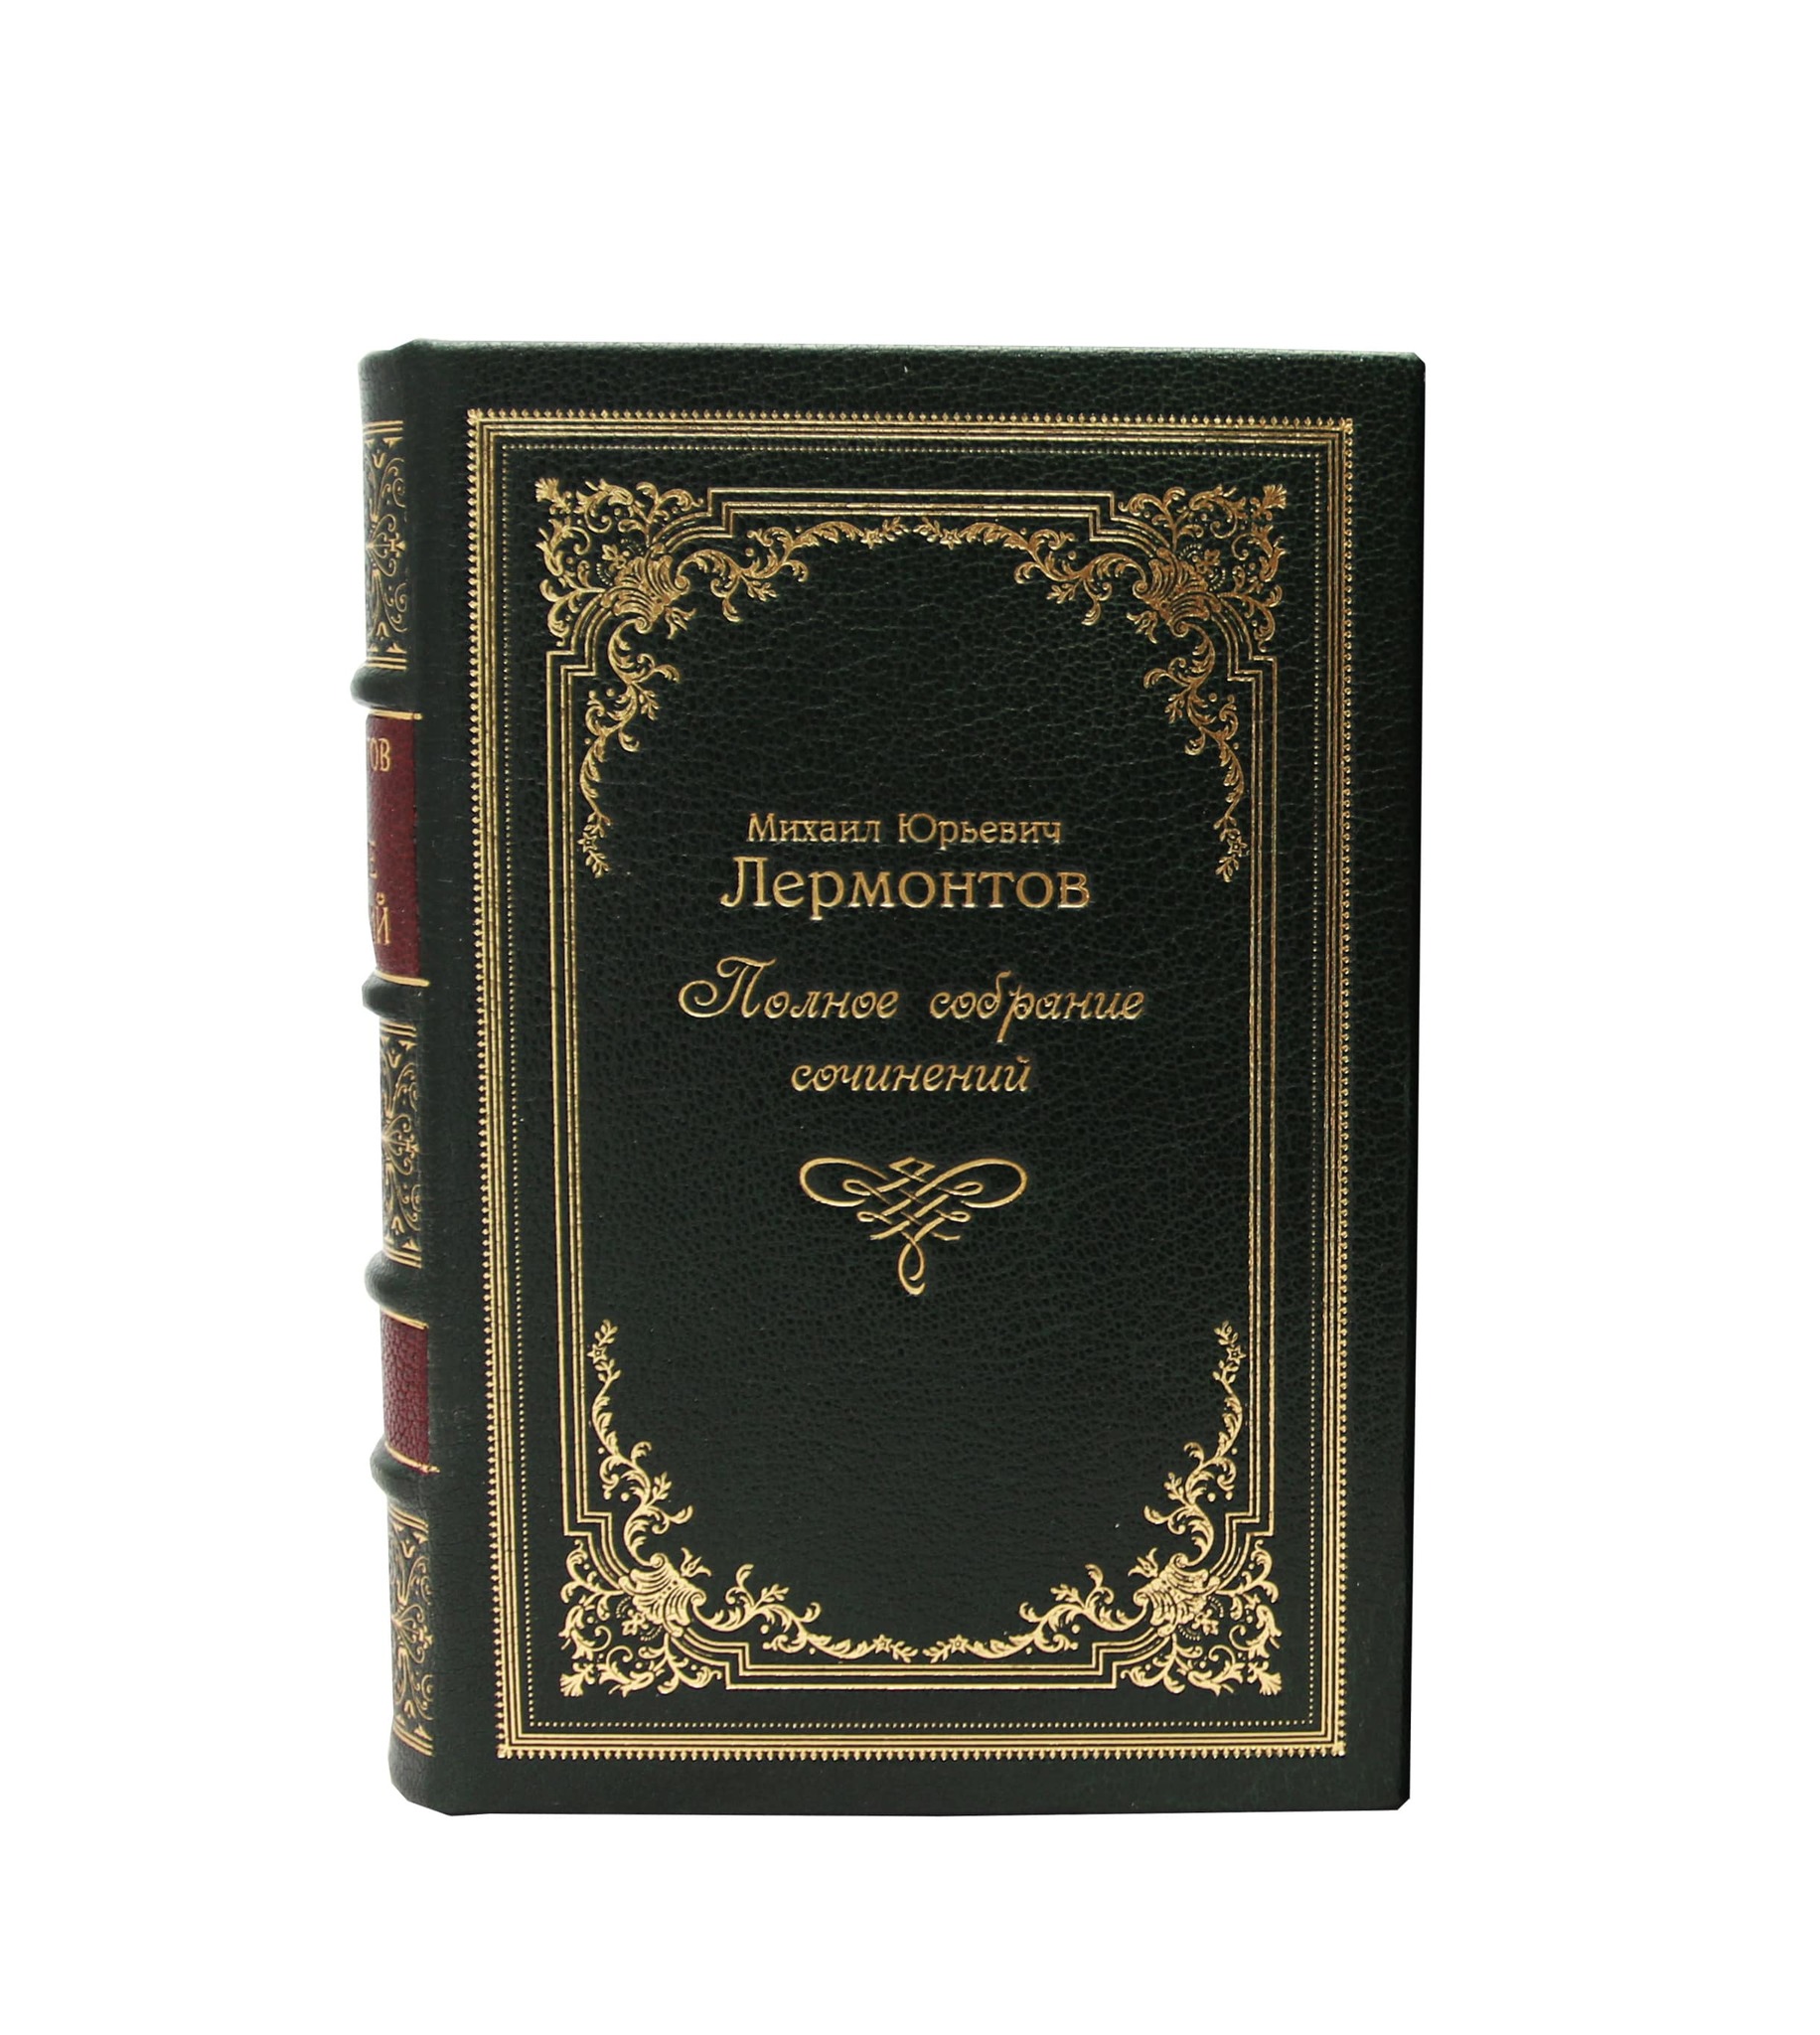 Лермонтов М.Ю. Полное собрание сочинений (в 4 томах). Эксклюзивное издание